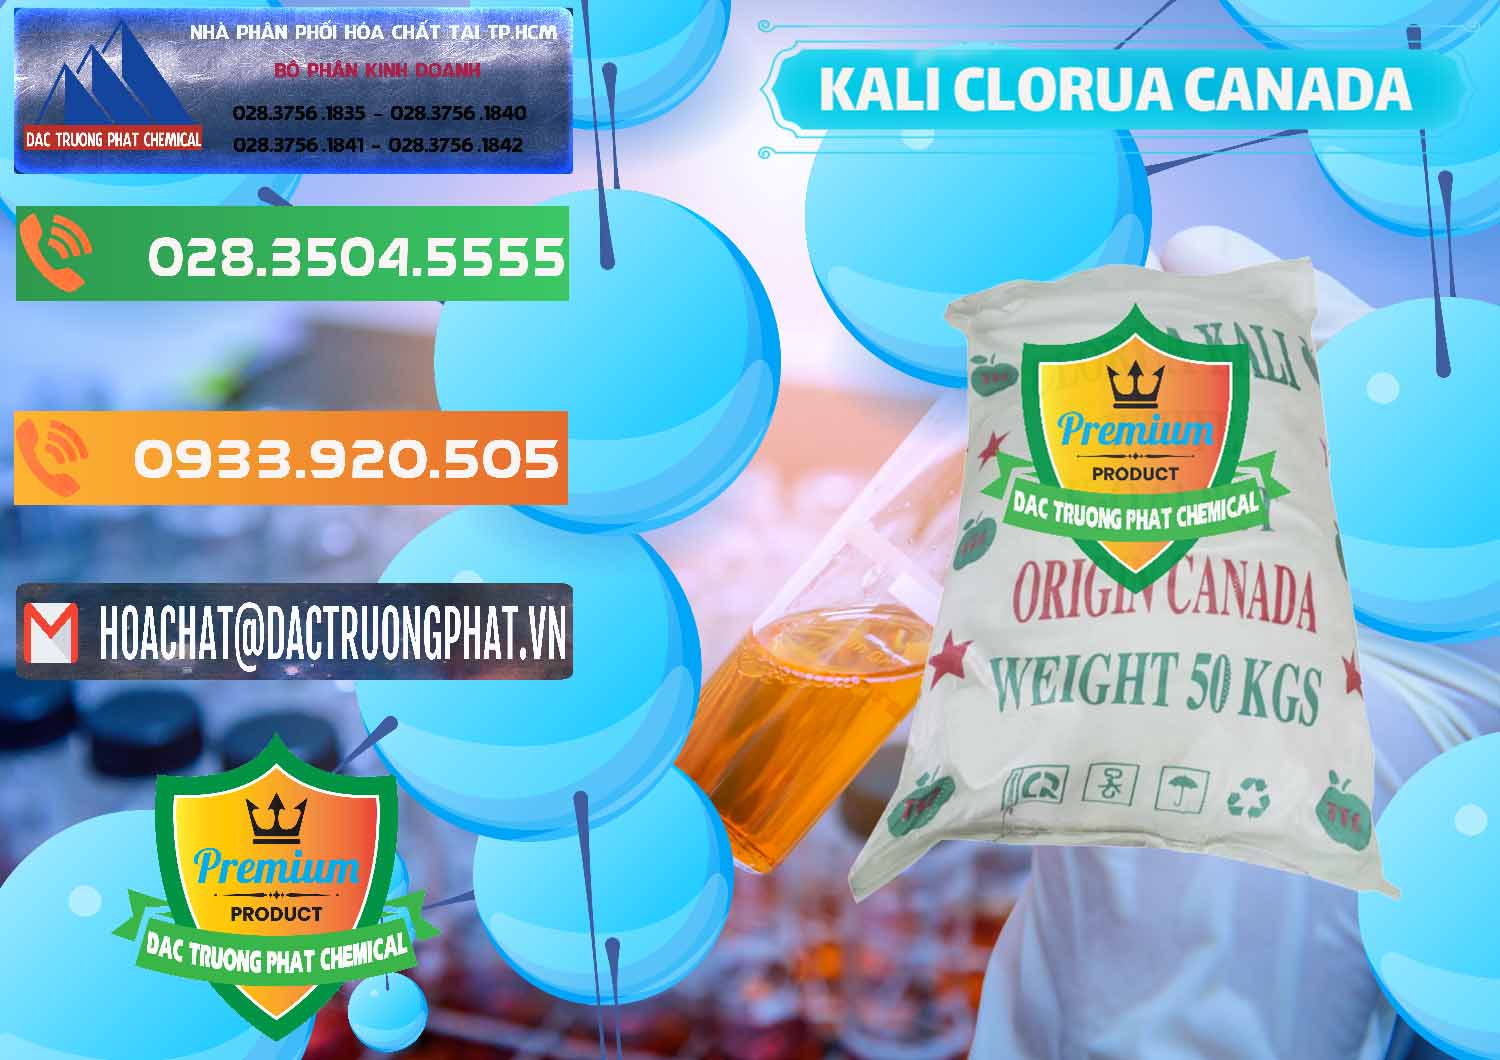 Cung cấp & bán KCL – Kali Clorua Trắng Canada - 0437 - Đơn vị phân phối _ cung cấp hóa chất tại TP.HCM - hoachatxulynuoc.com.vn